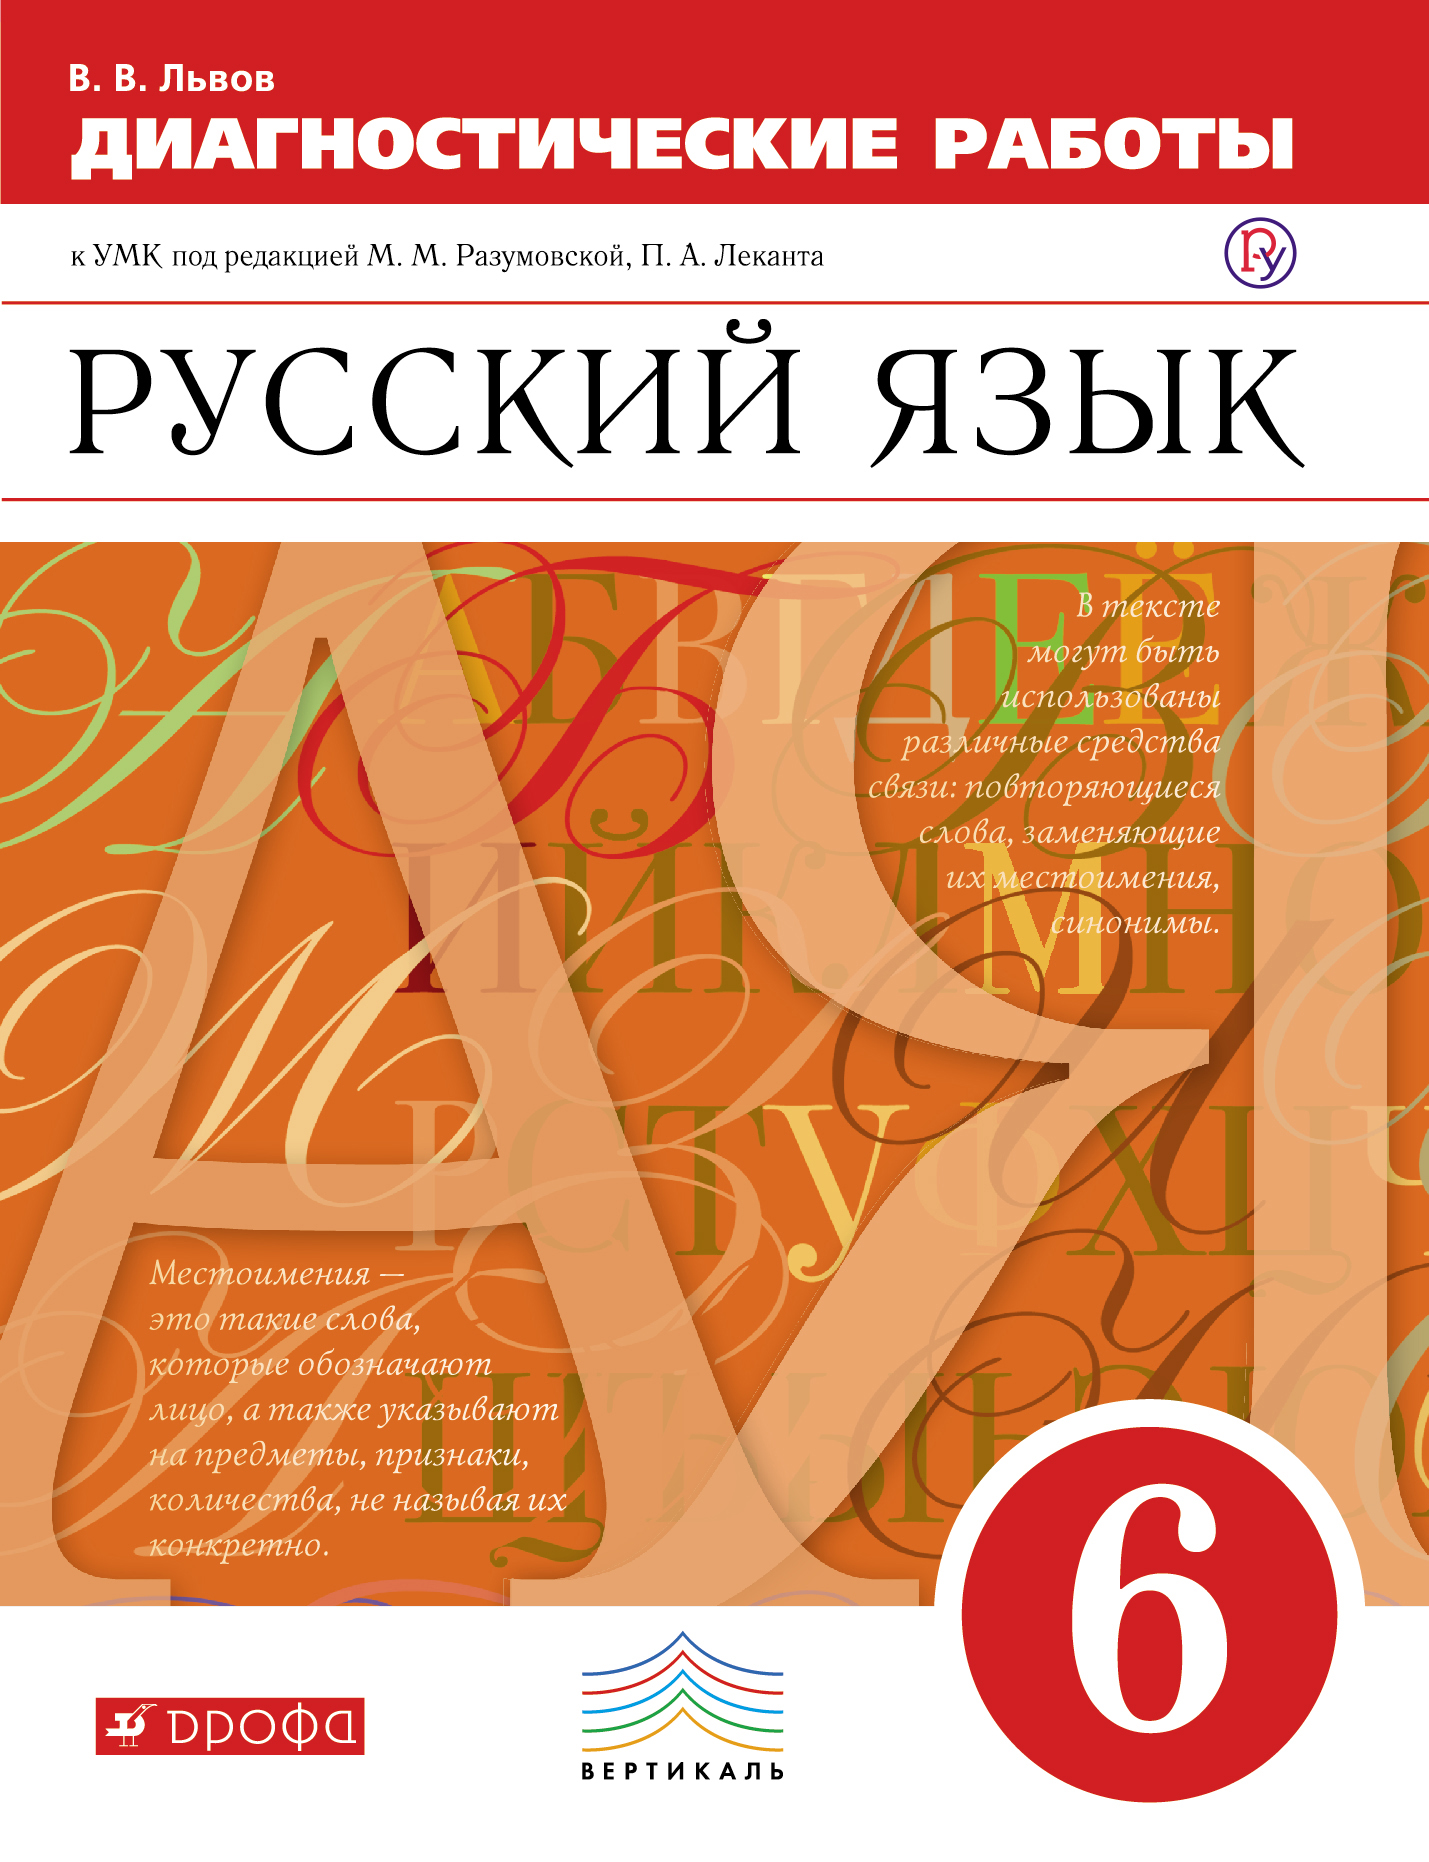 Учебник русского языка 6 класс львов львова pdf